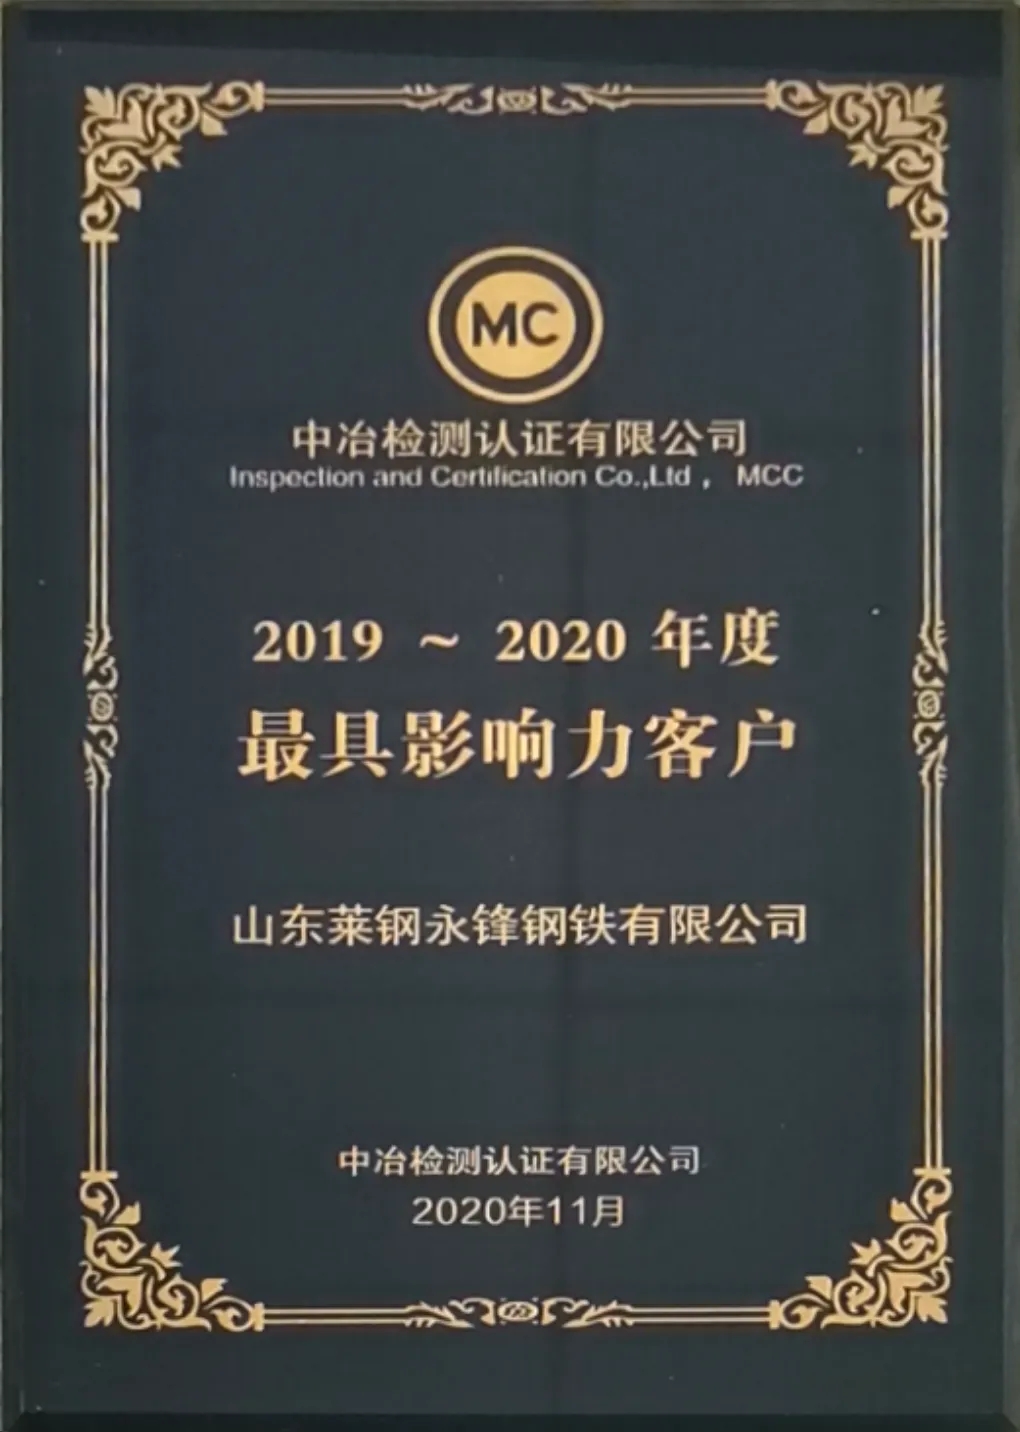 公司荣获“中冶MC认证最具影响力企业”